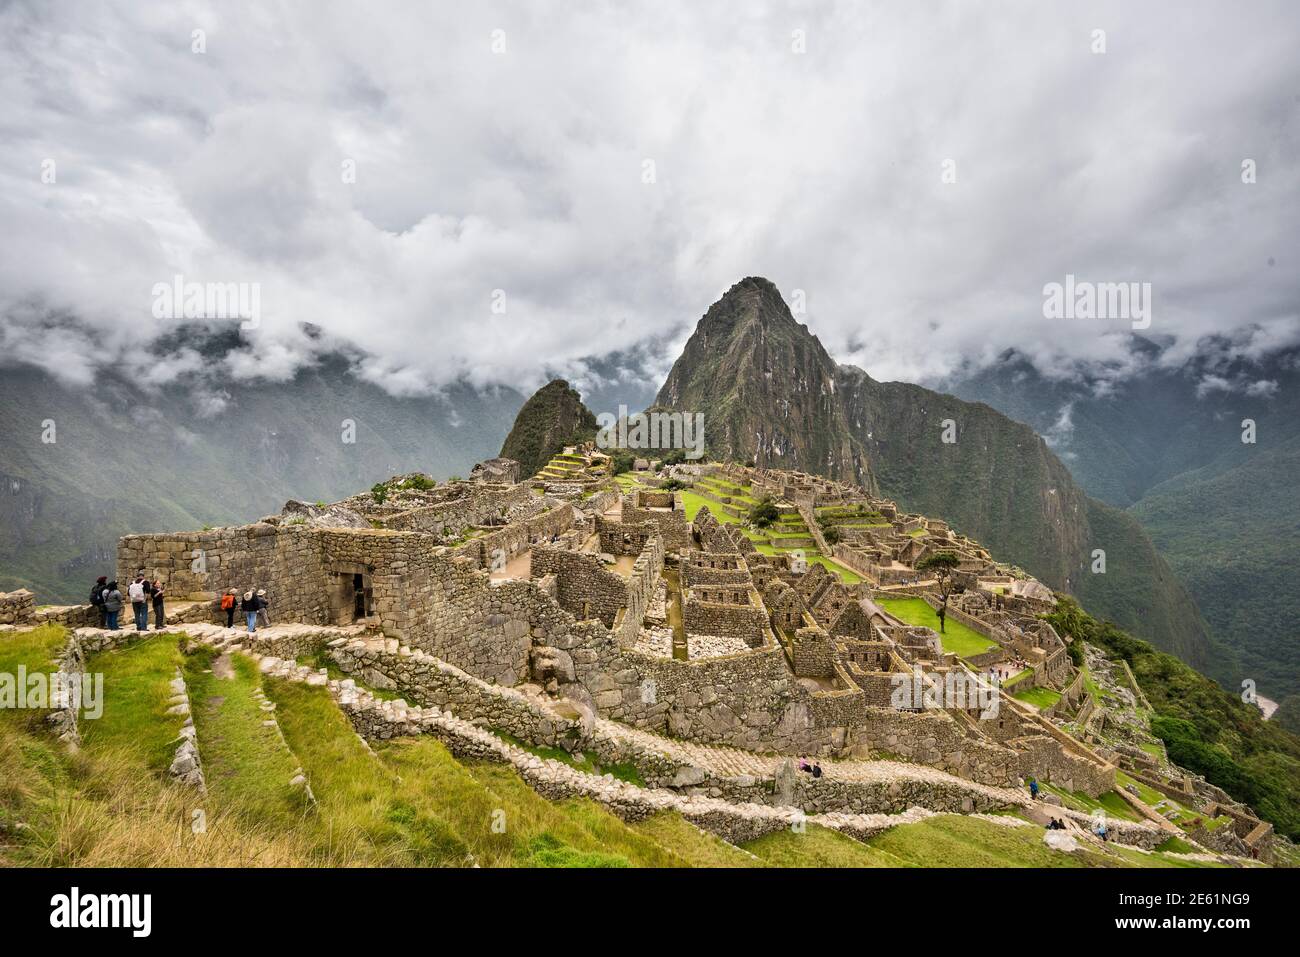 Inkaruinen von Machu Picchu, Peru. Stockfoto